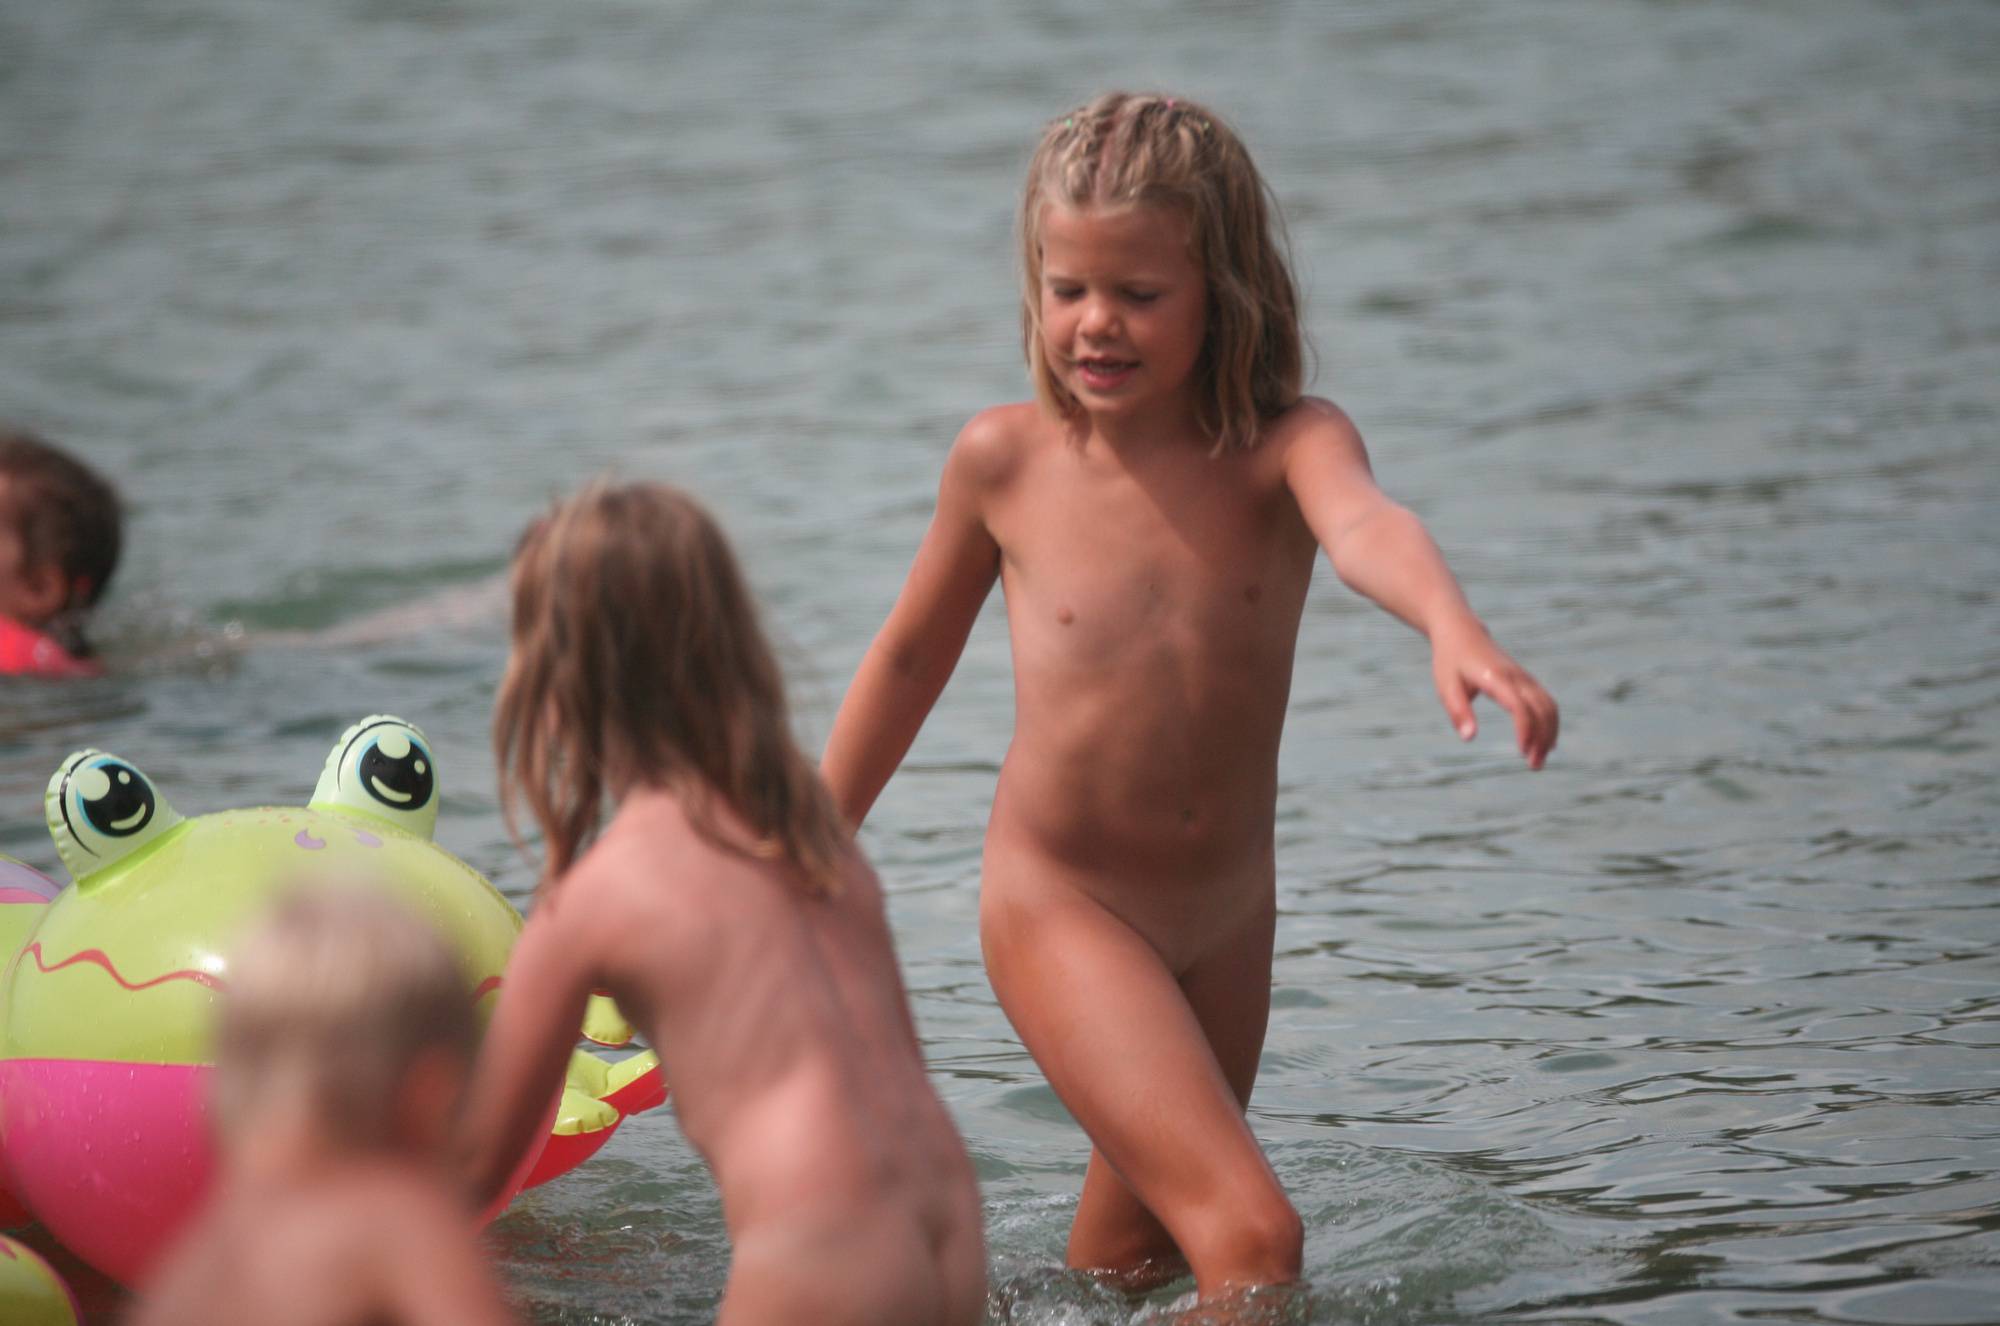 Nudist Kids On Floatables - Purenudism Family - 1